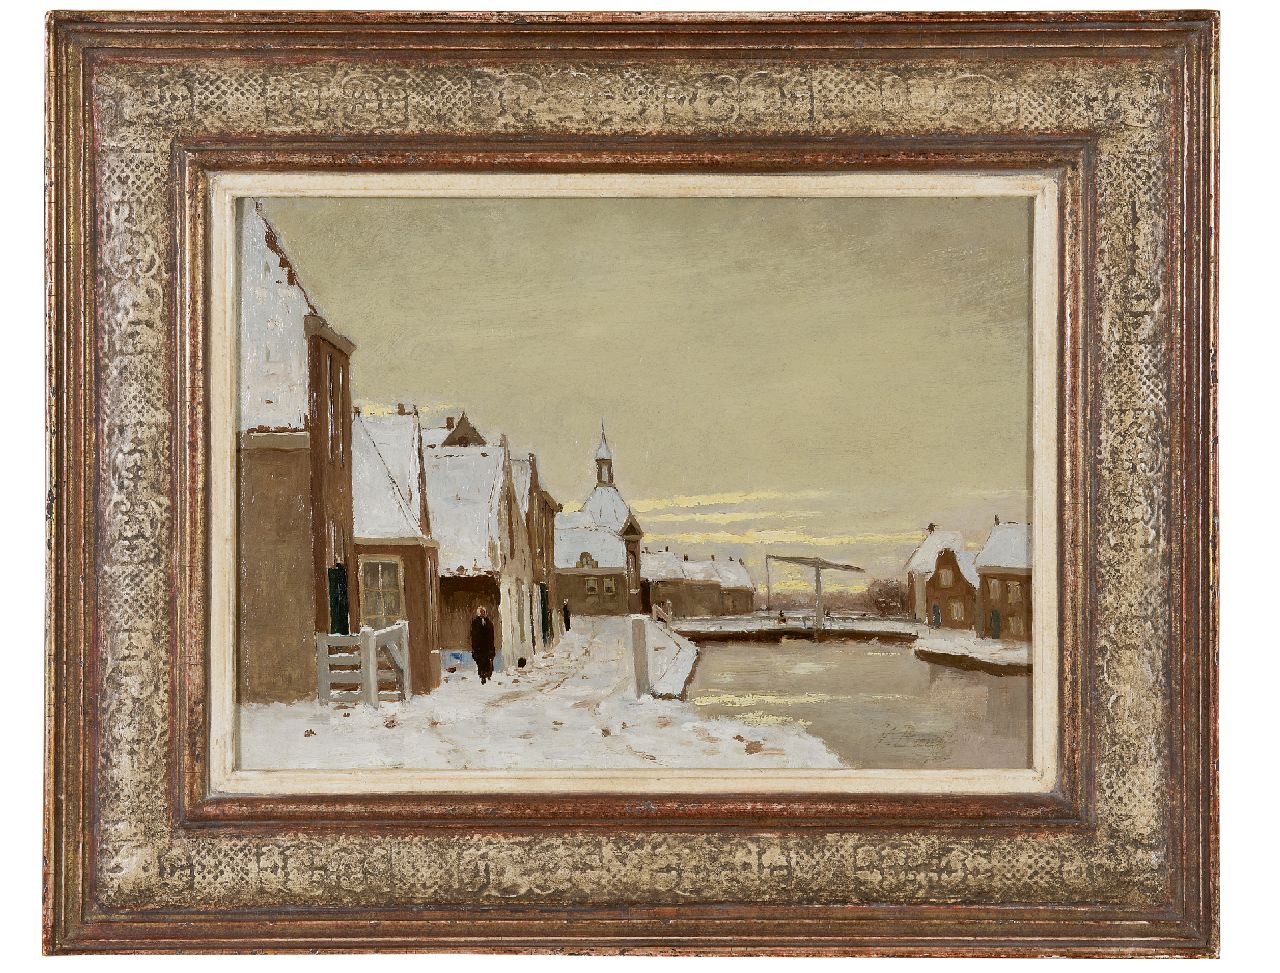 Bauffe V.  | Victor Bauffe | Schilderijen te koop aangeboden | Winters gezicht op Leidschendam met ophaalbrug, olieverf op doek 25,3 x 35,7 cm, gesigneerd rechtsonder